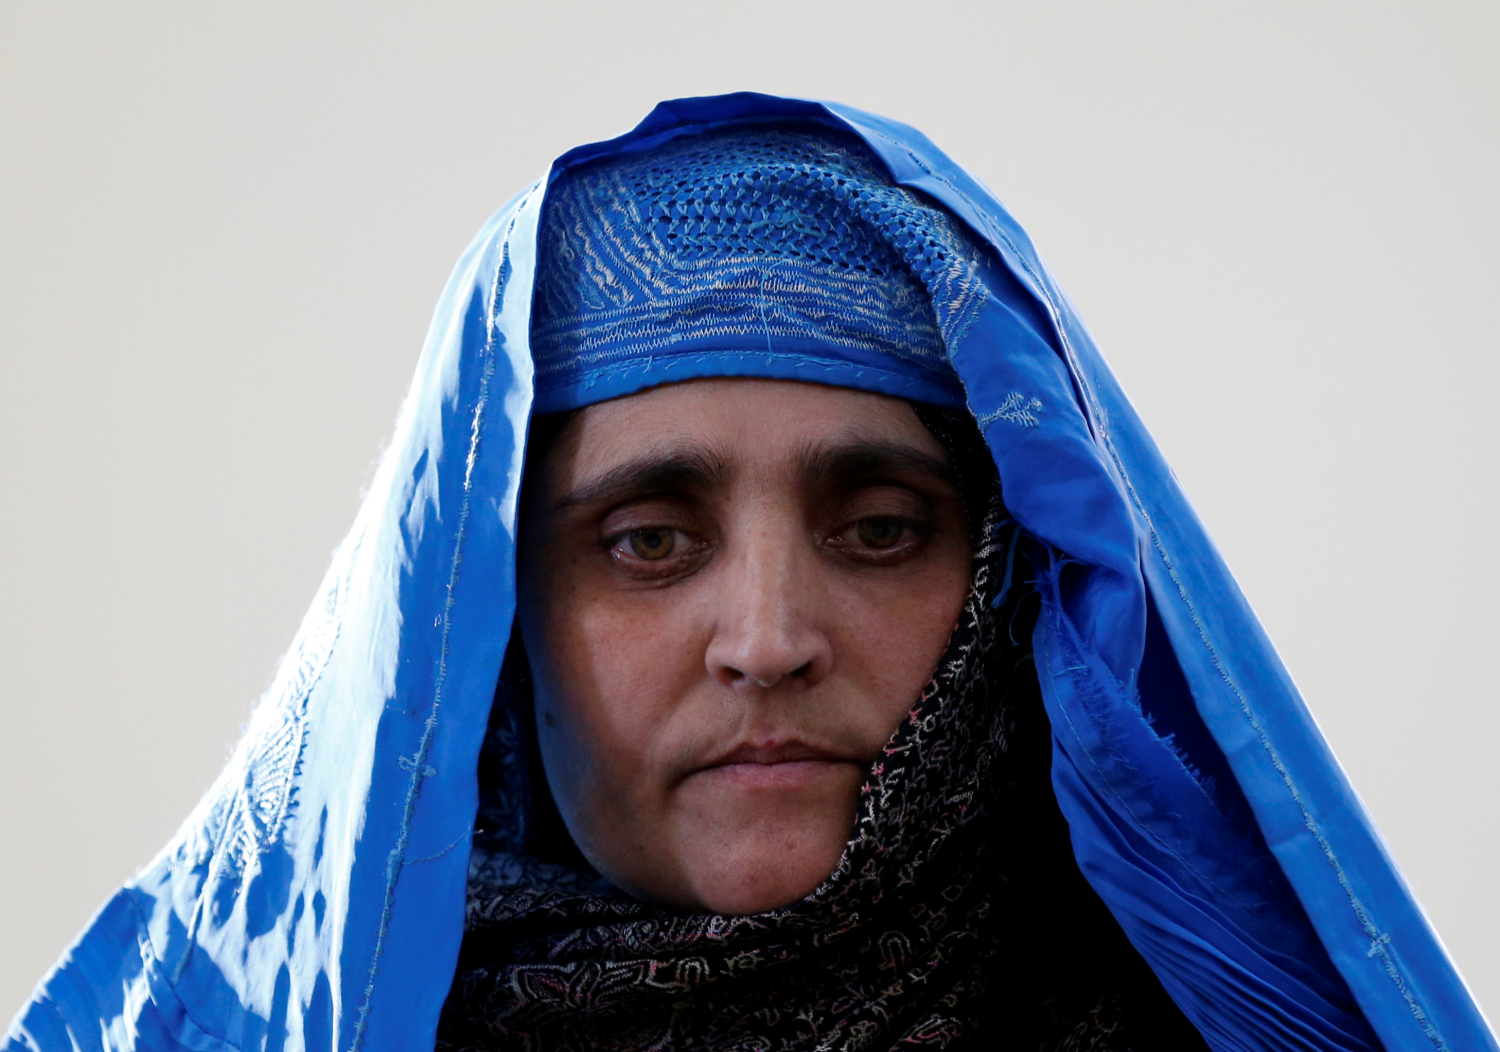 Deportan a la ‘niña afgana’ que protagonizó la icónica portada de ‘National Geographic’